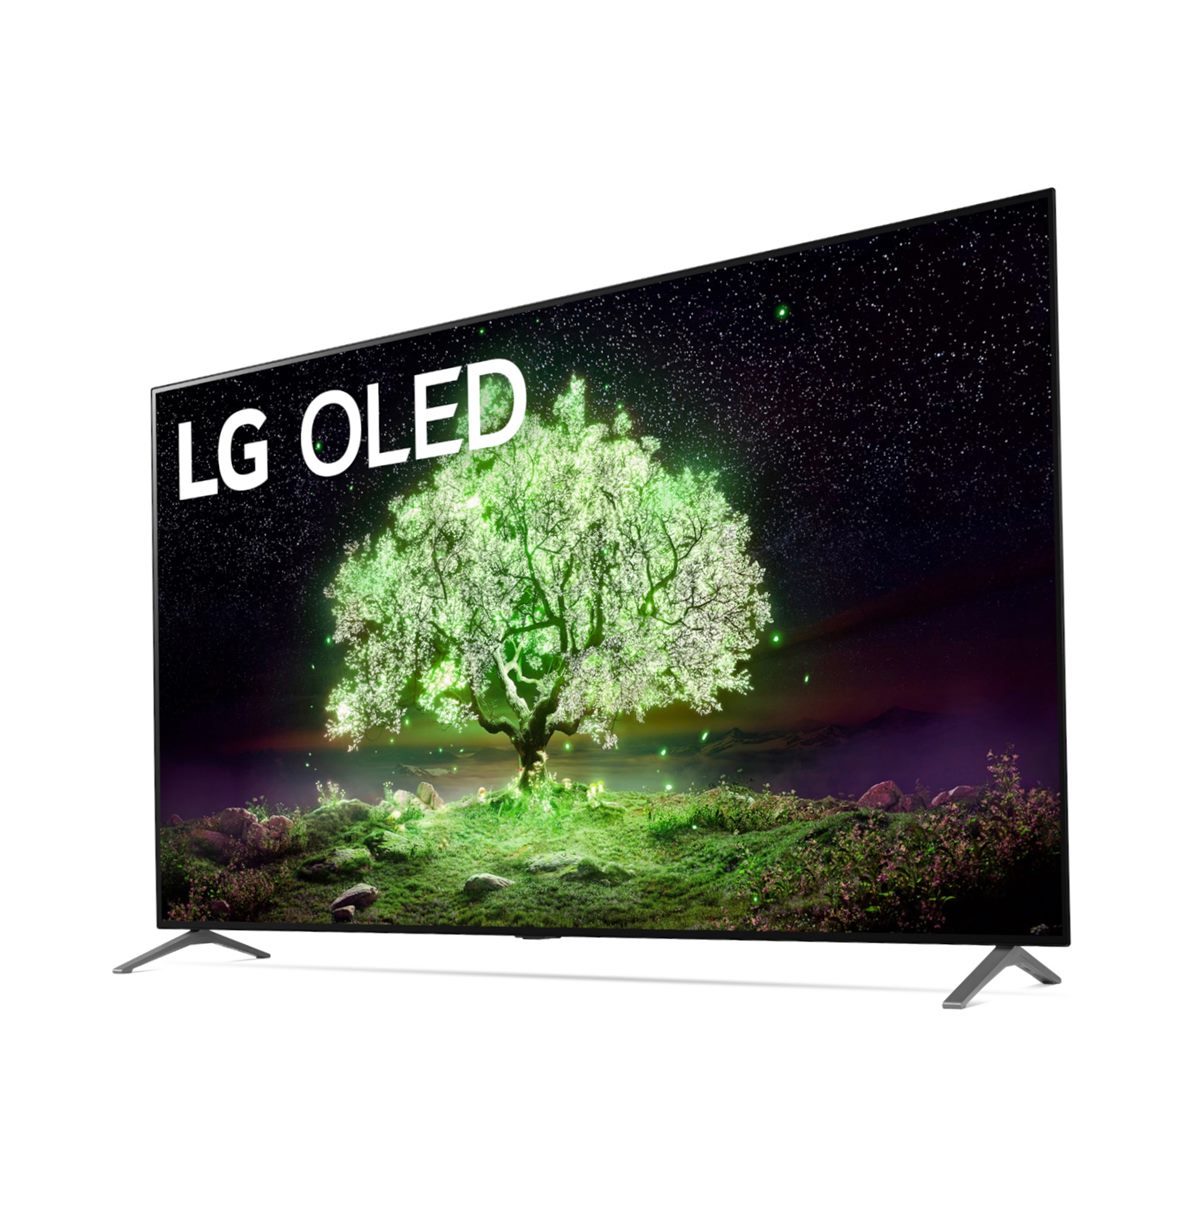 LG OLED TV, A1